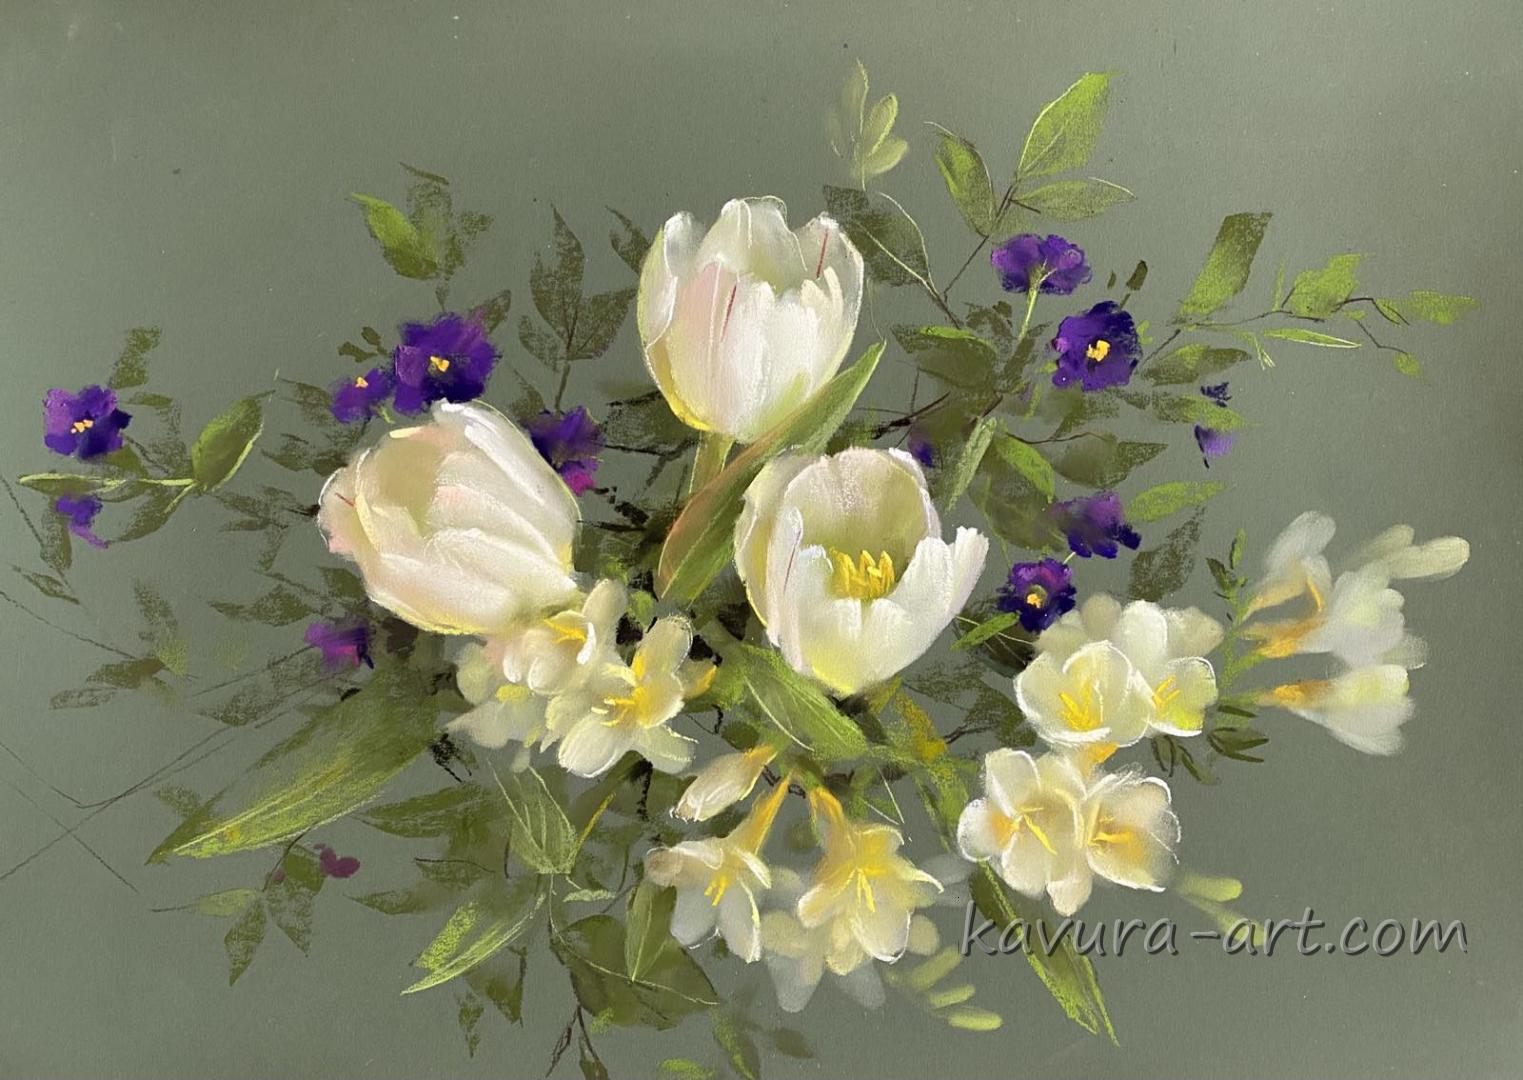 White tulips and freesia